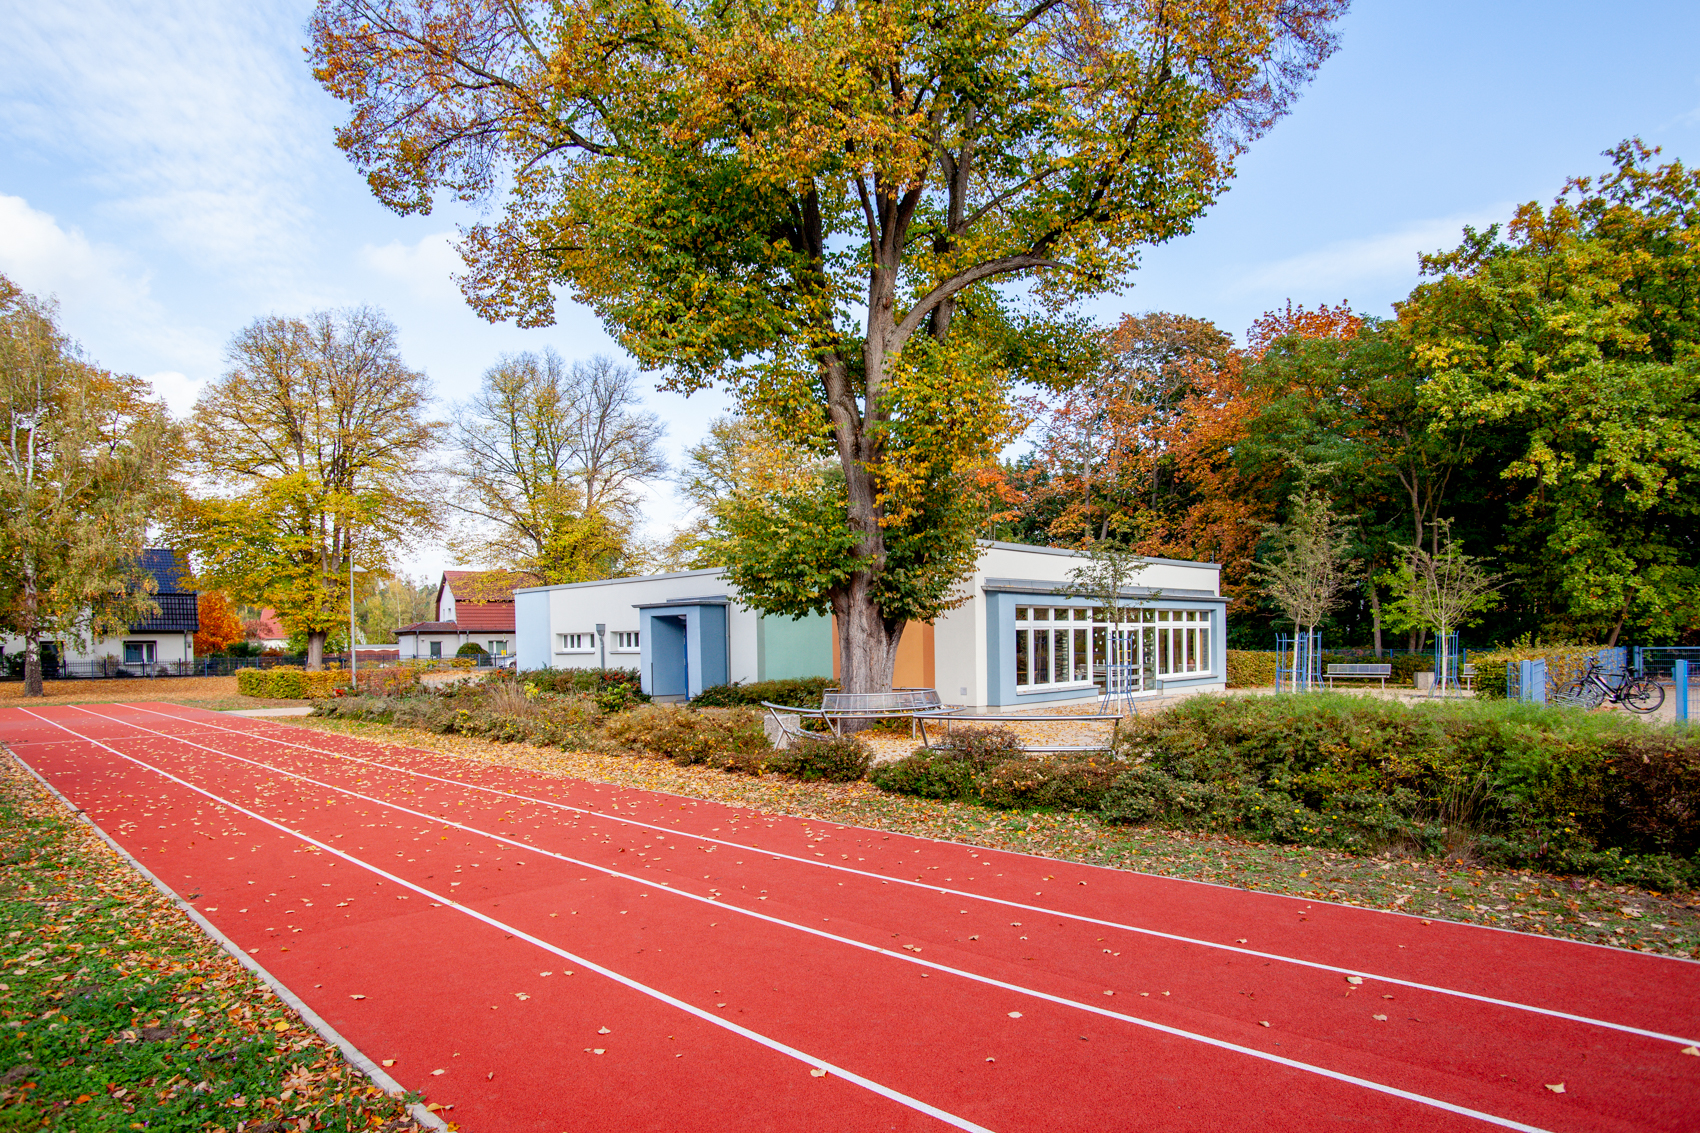 Leichtathletikbahn mit Turnhalle im Hintergrund